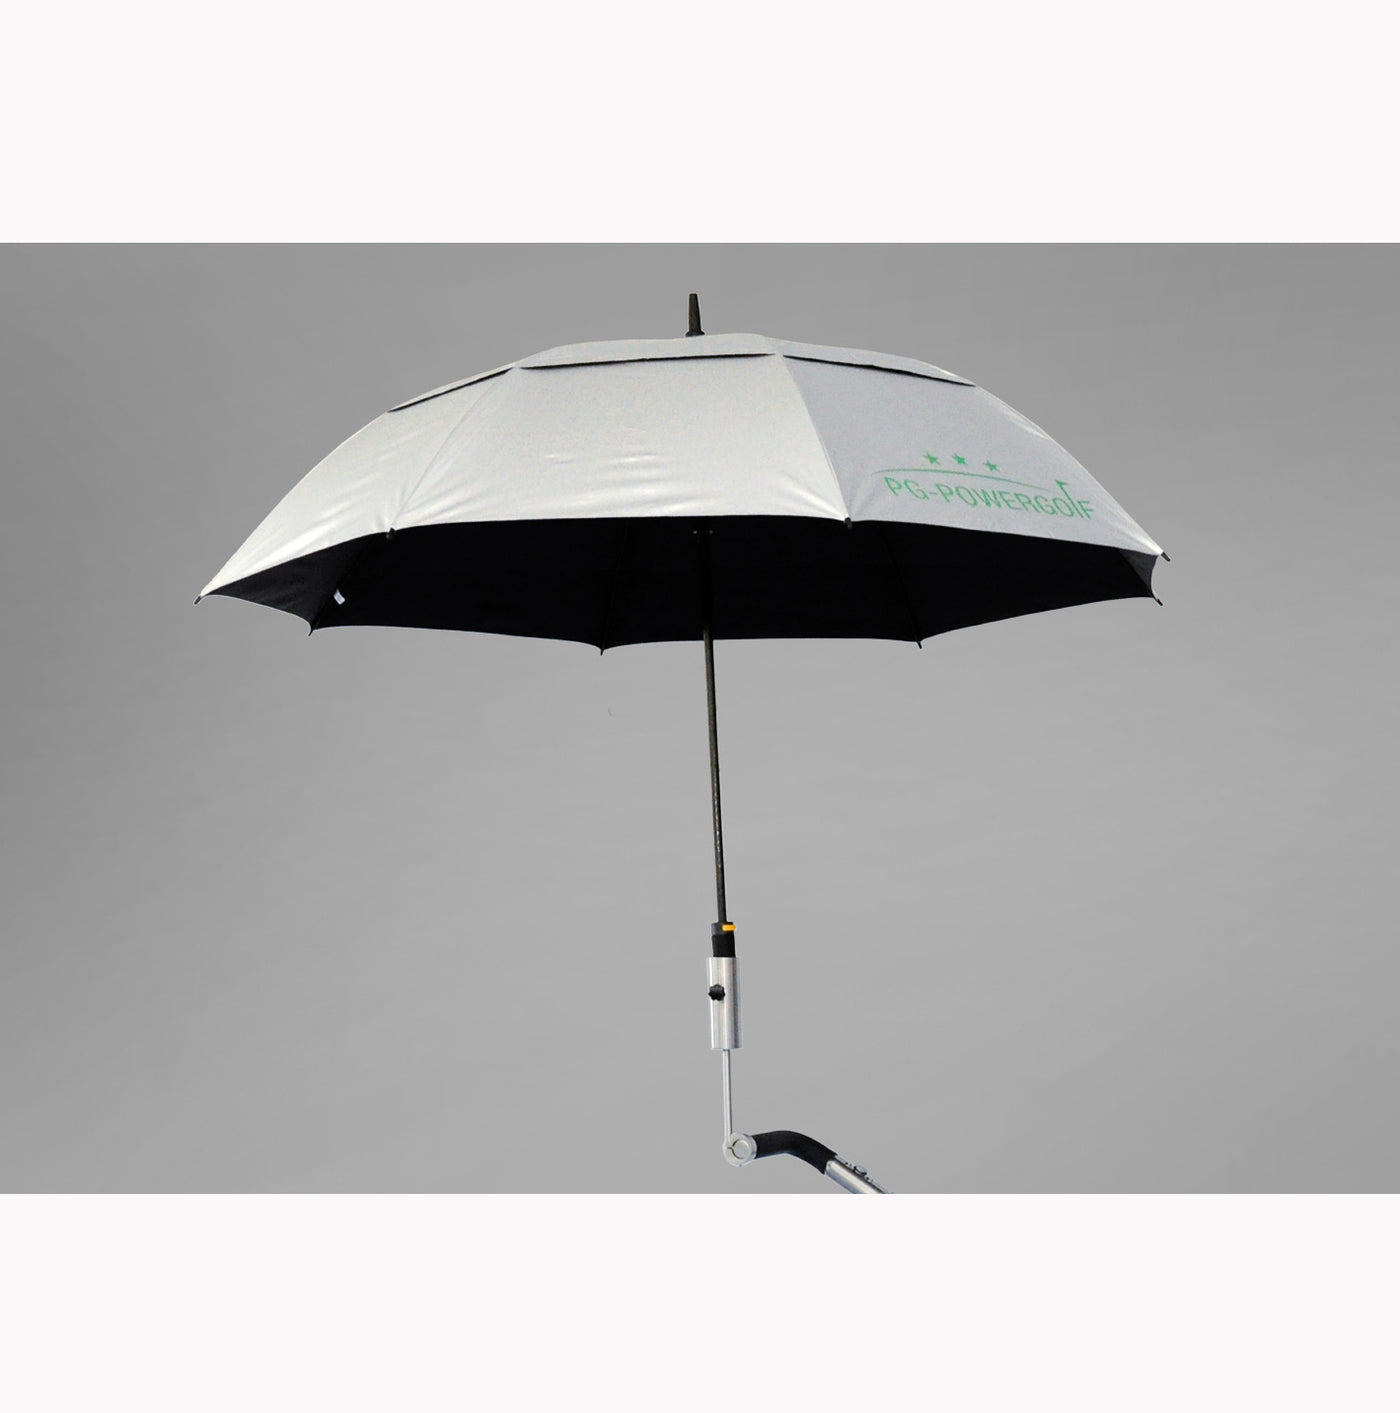 Parapluie de golf PG Powergolf avec protection UV